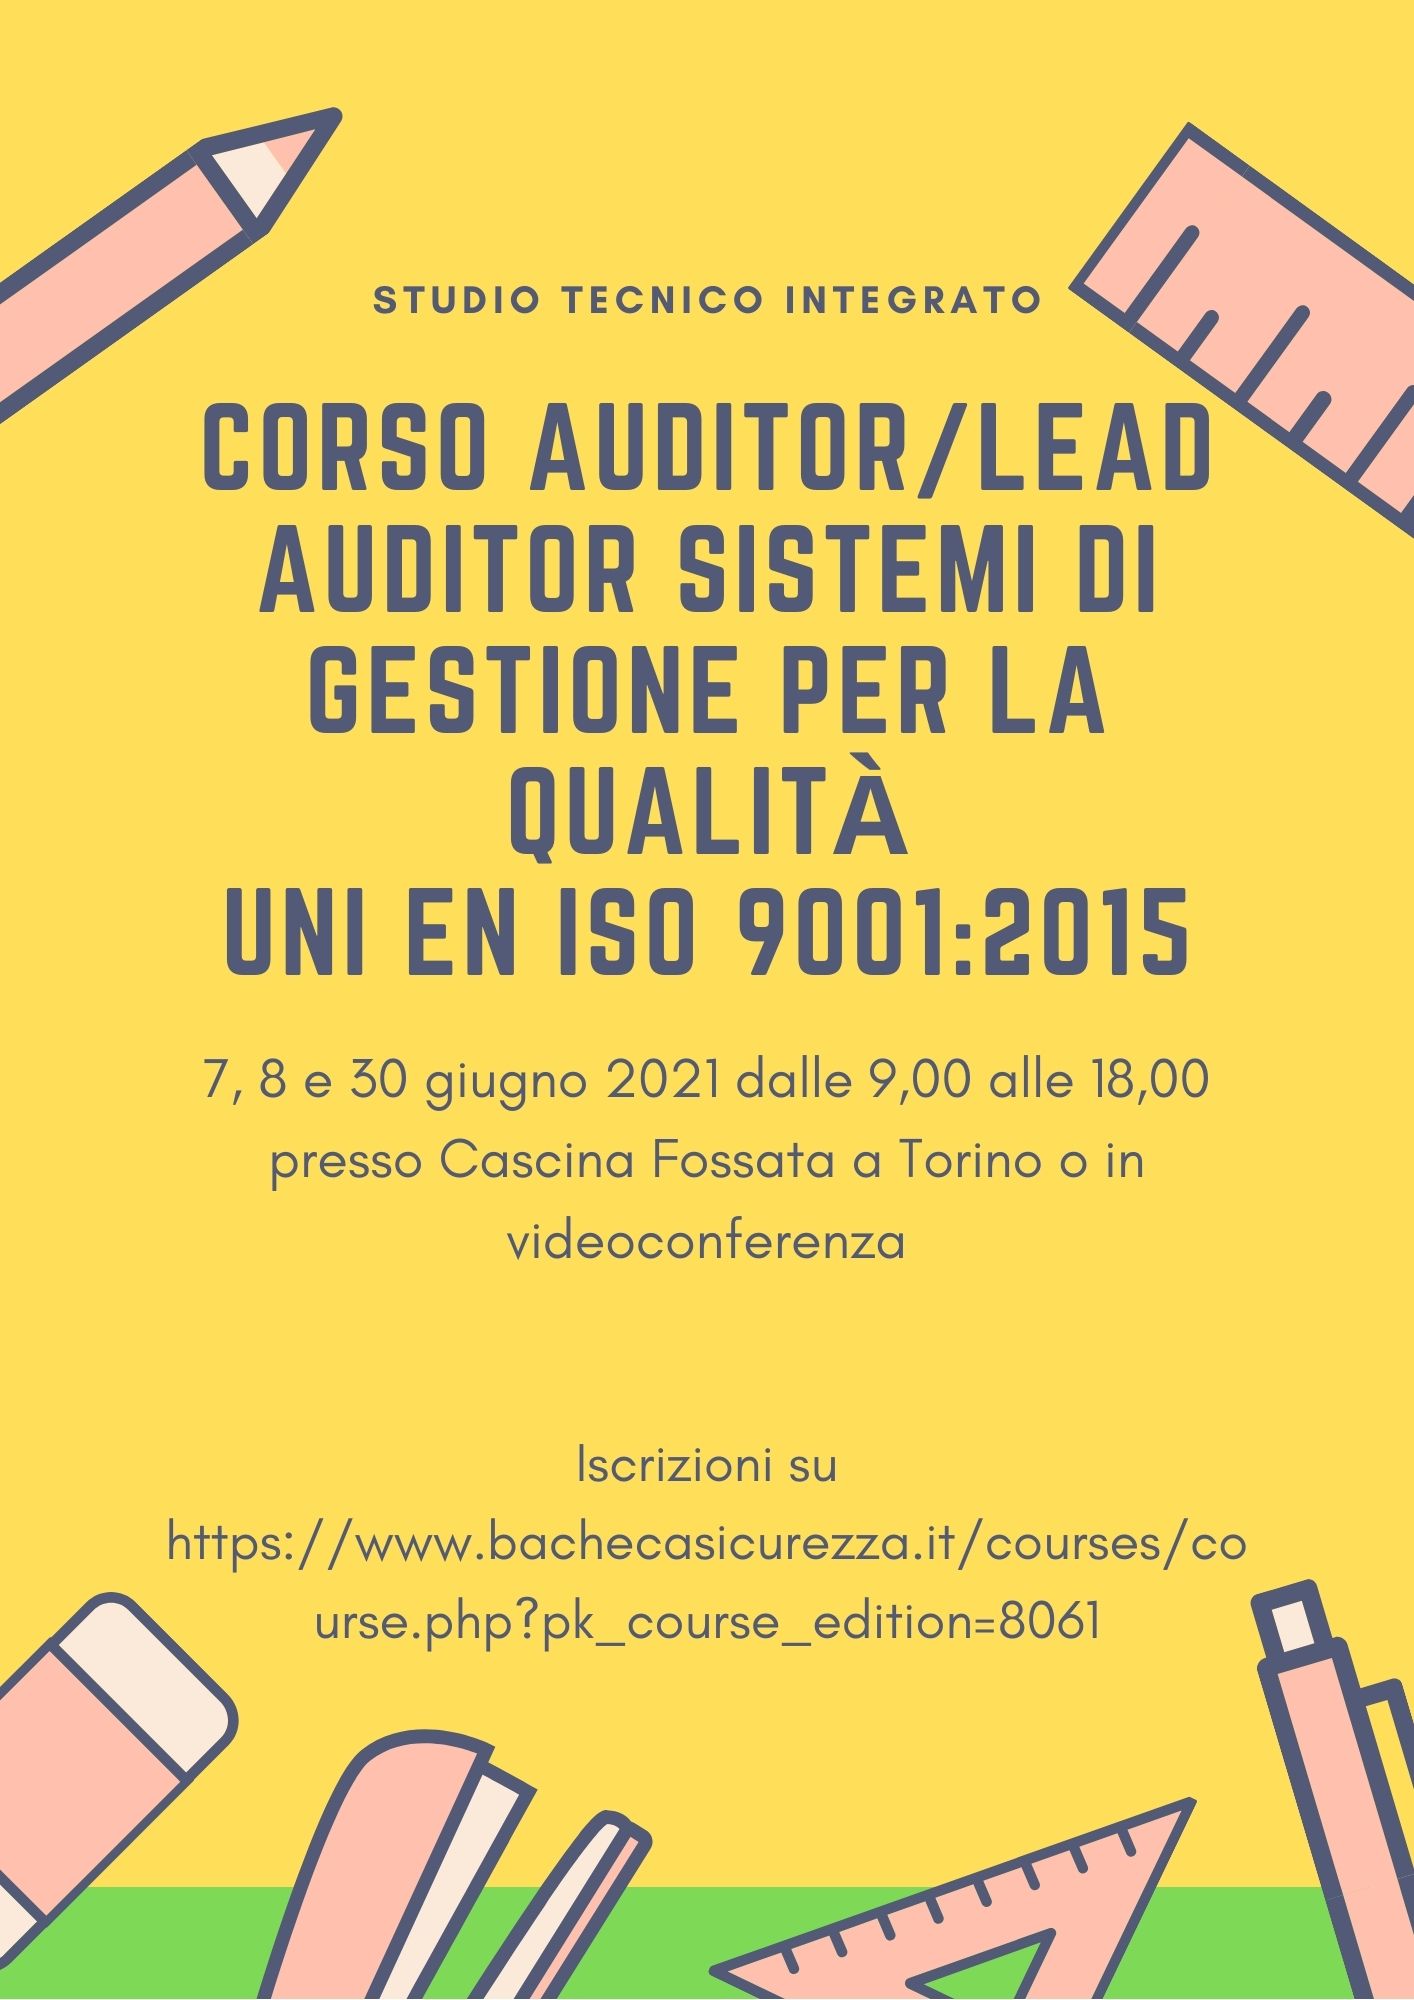 Corso di formazione per auditor/lead auditor sistemi di gestione per la qualità (UNI EN ISO 9001)